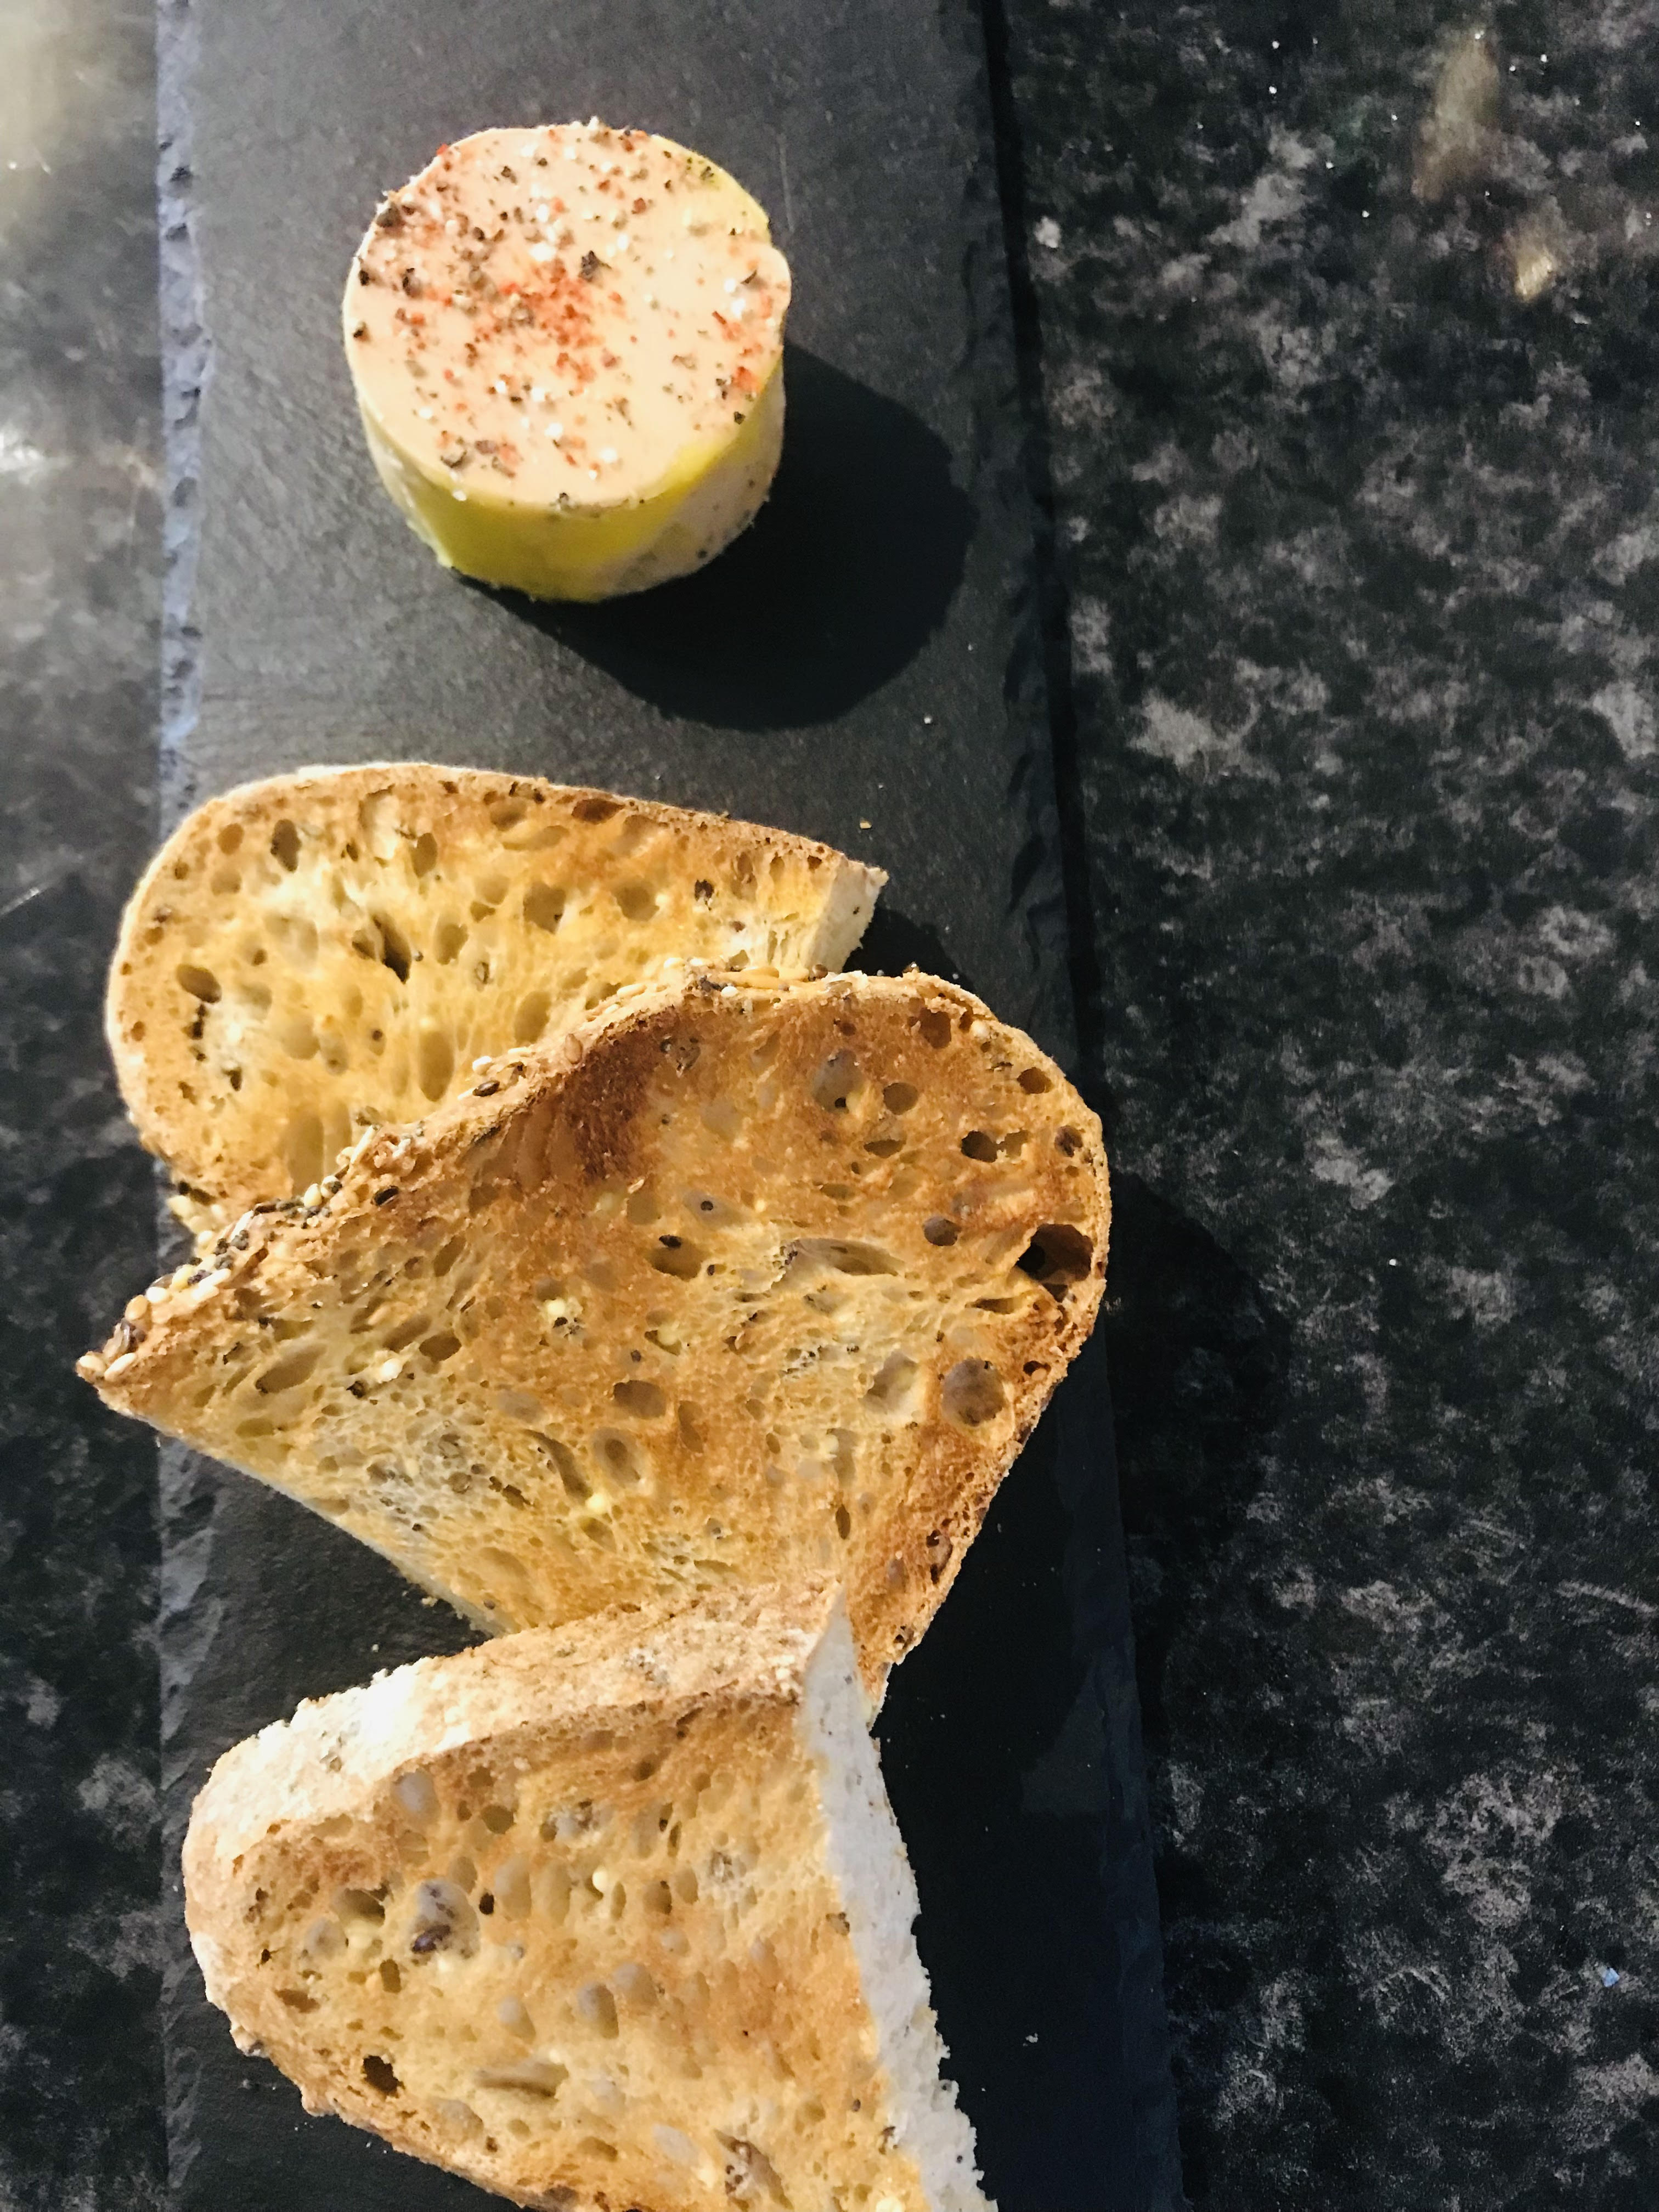 Foie gras de canard IGP (50gr.) , pain de campagne grillé